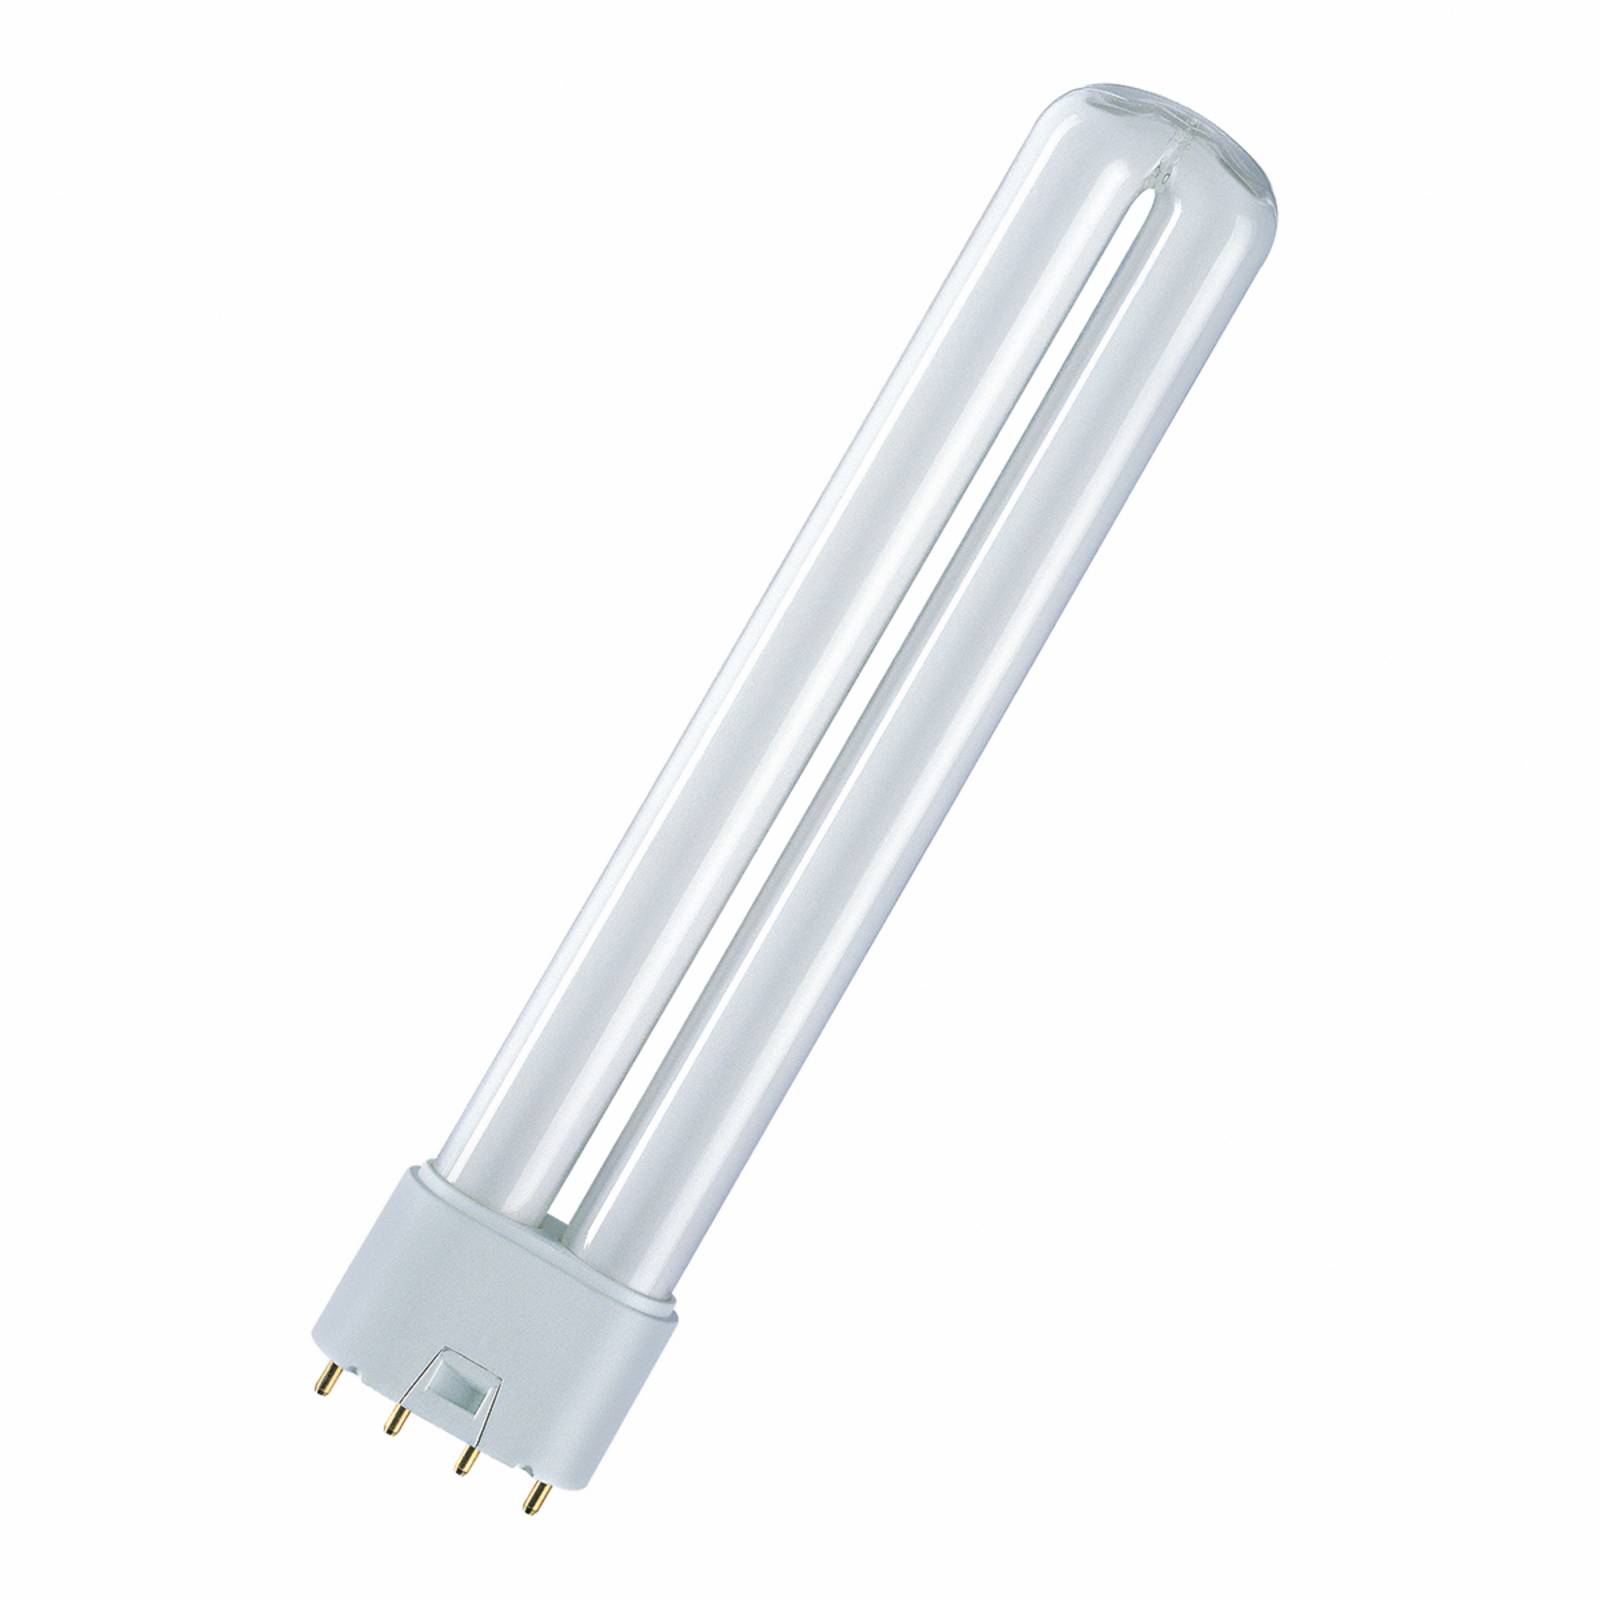 Image of 2G11 18W/840 Ampoule fluo-compacte Dulux L 4050300010724